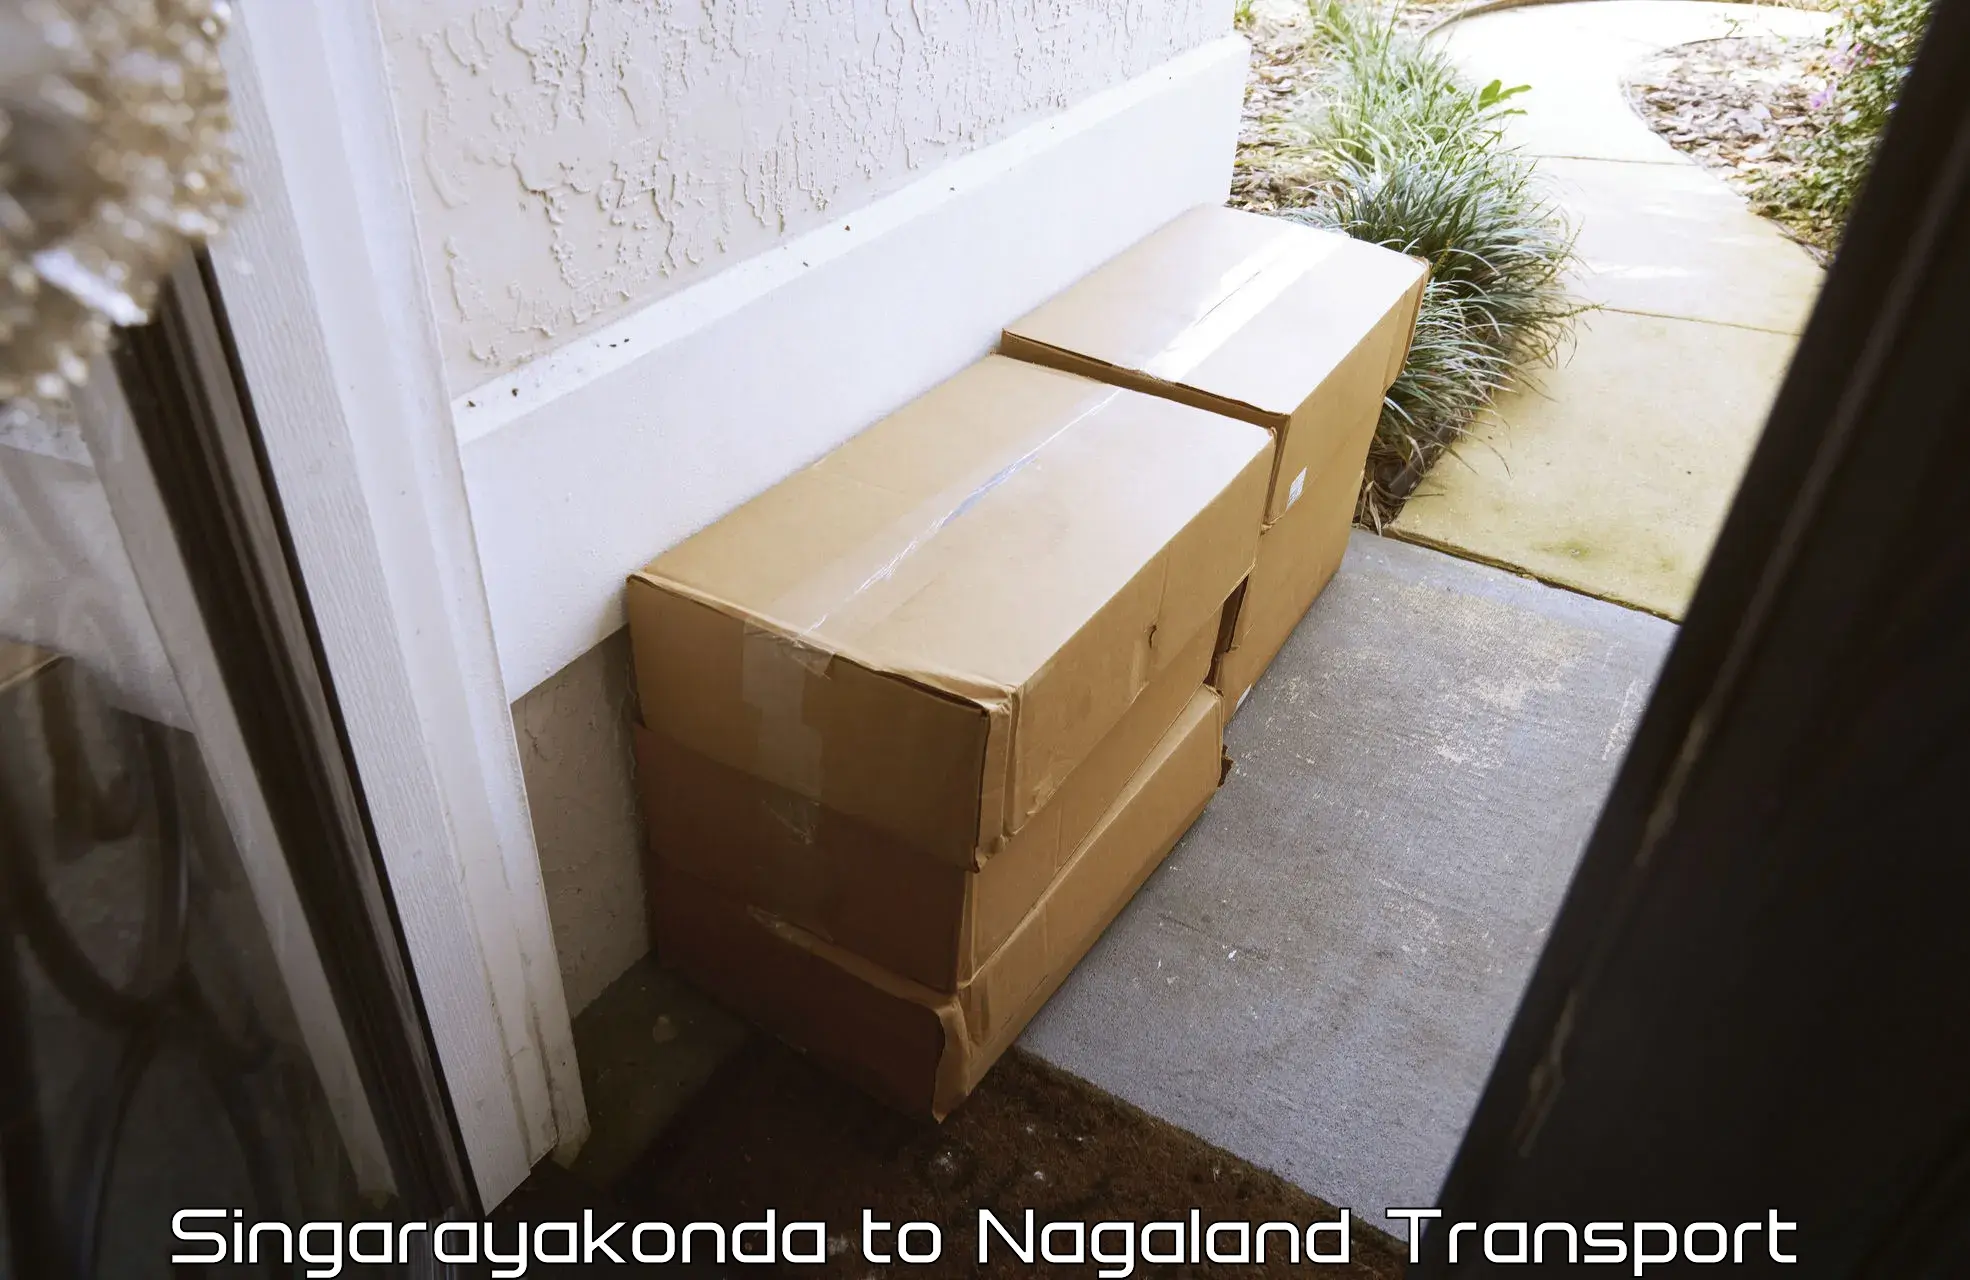 Air freight transport services Singarayakonda to NIT Nagaland